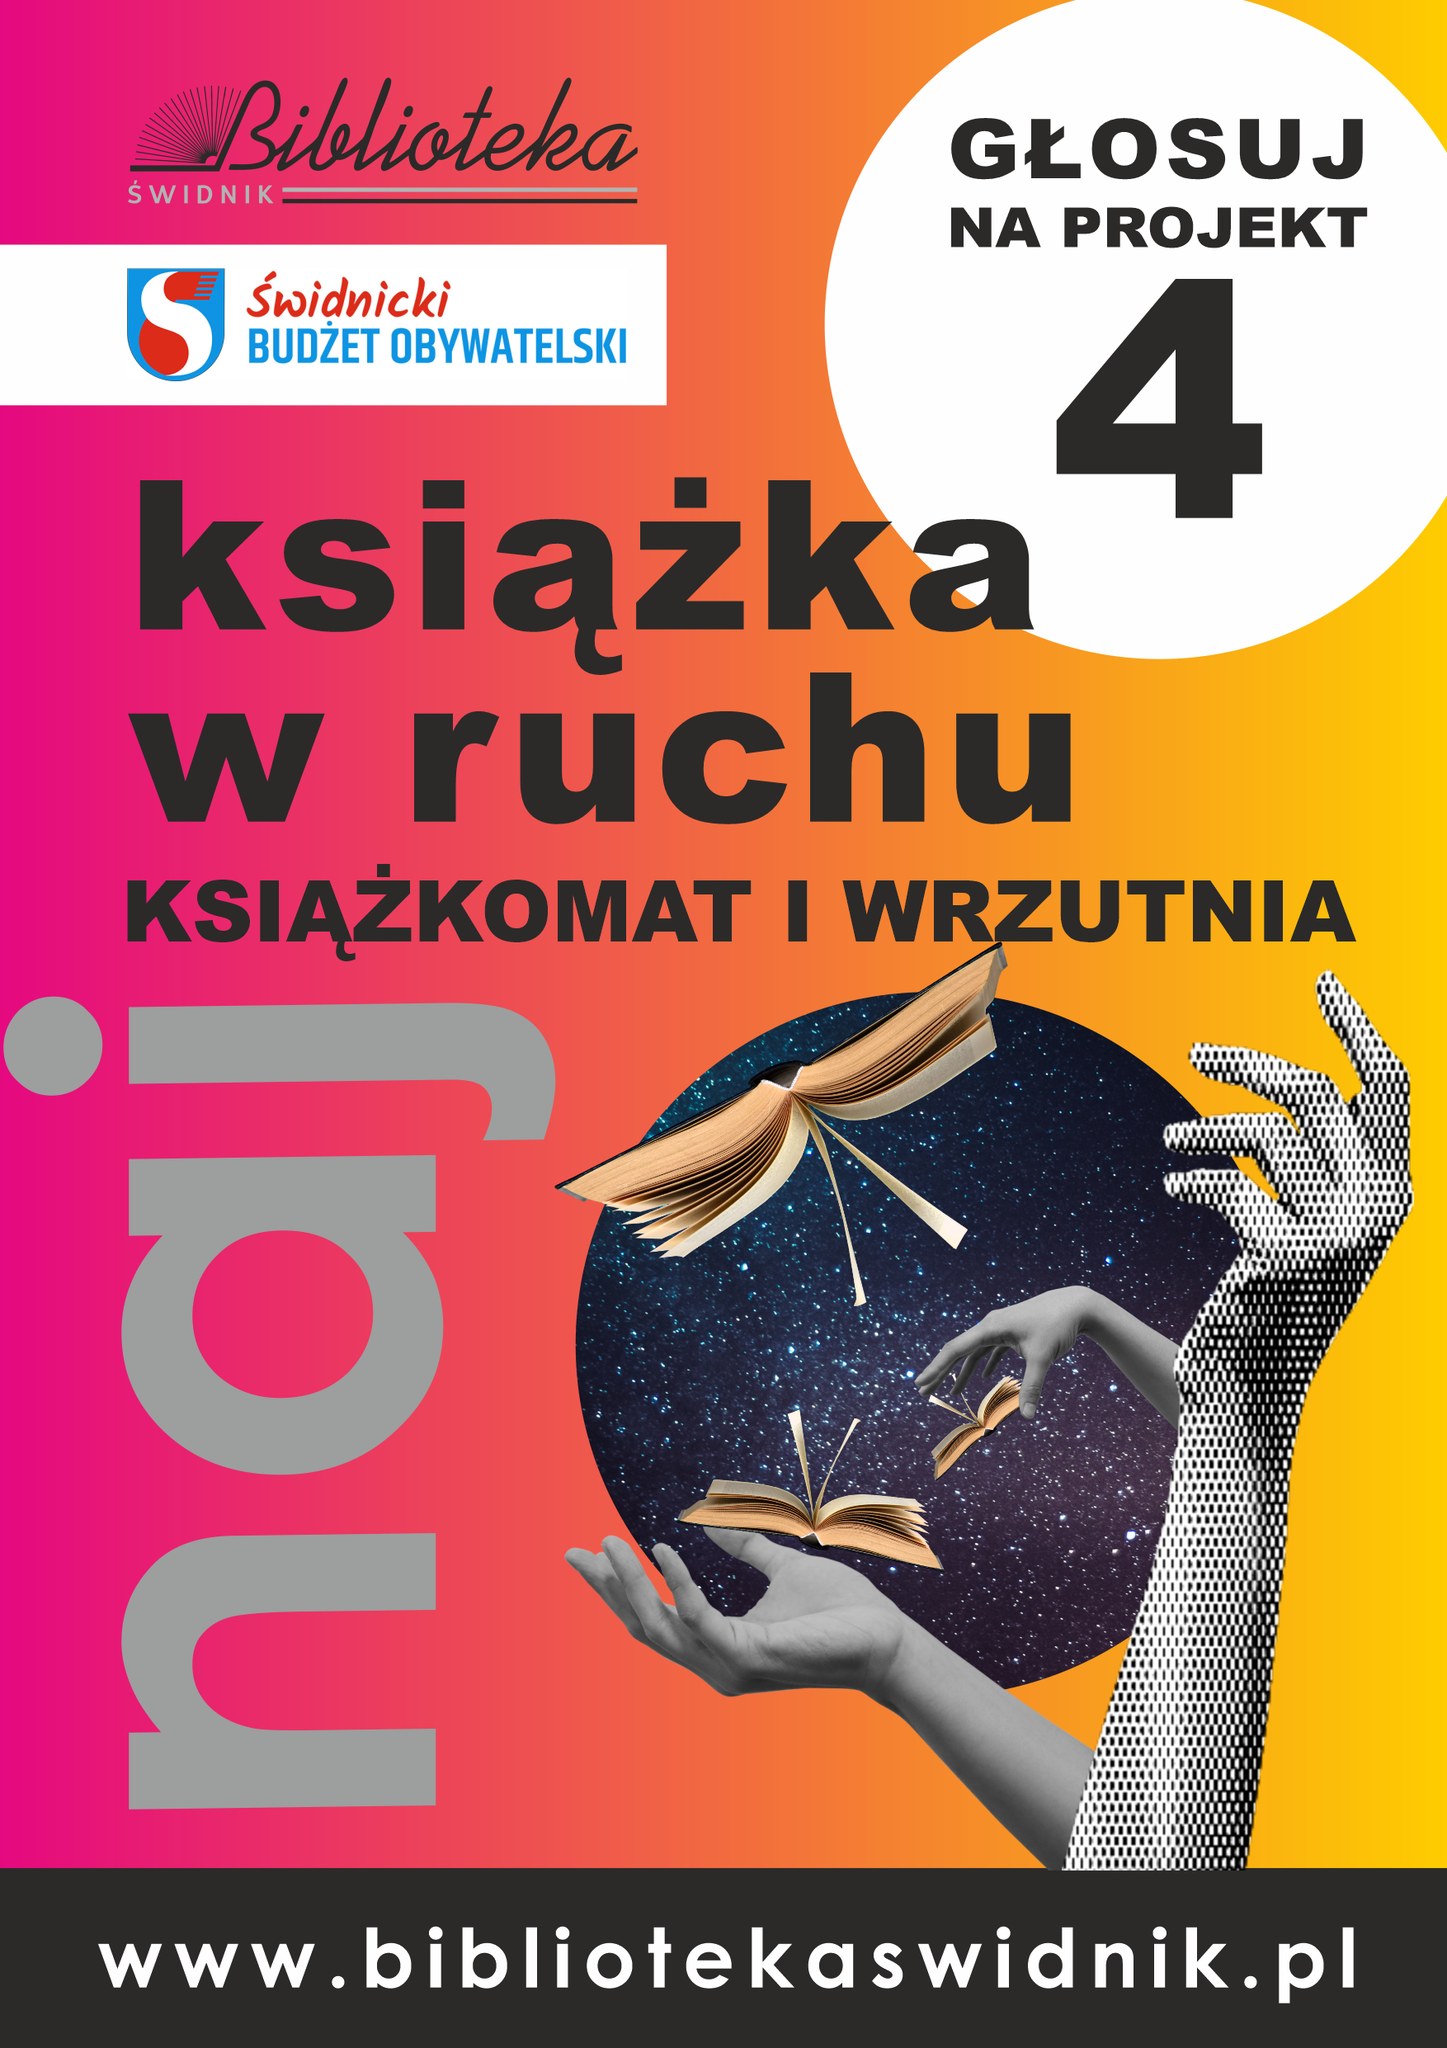 plakat z logiem biblioteki i Świdnickiego Budżetu Obywatelskiego z napisem Książka w w ruchu-głosuj na projekt nr 4